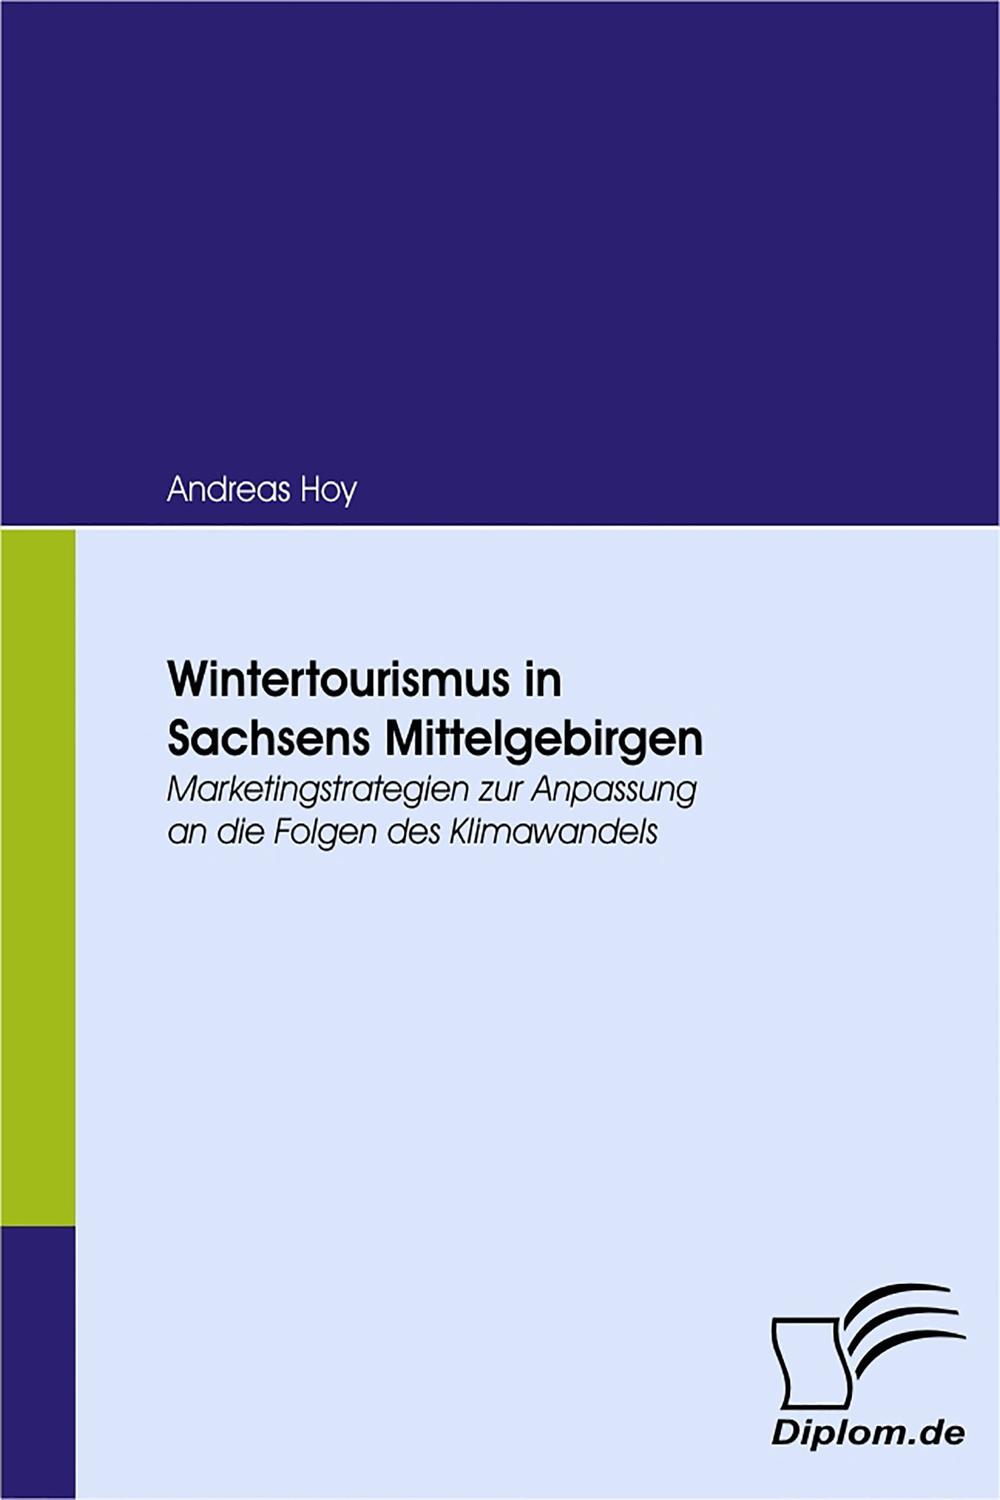 Wintertourismus in Sachsens Mittelgebirgen - Andreas Hoy